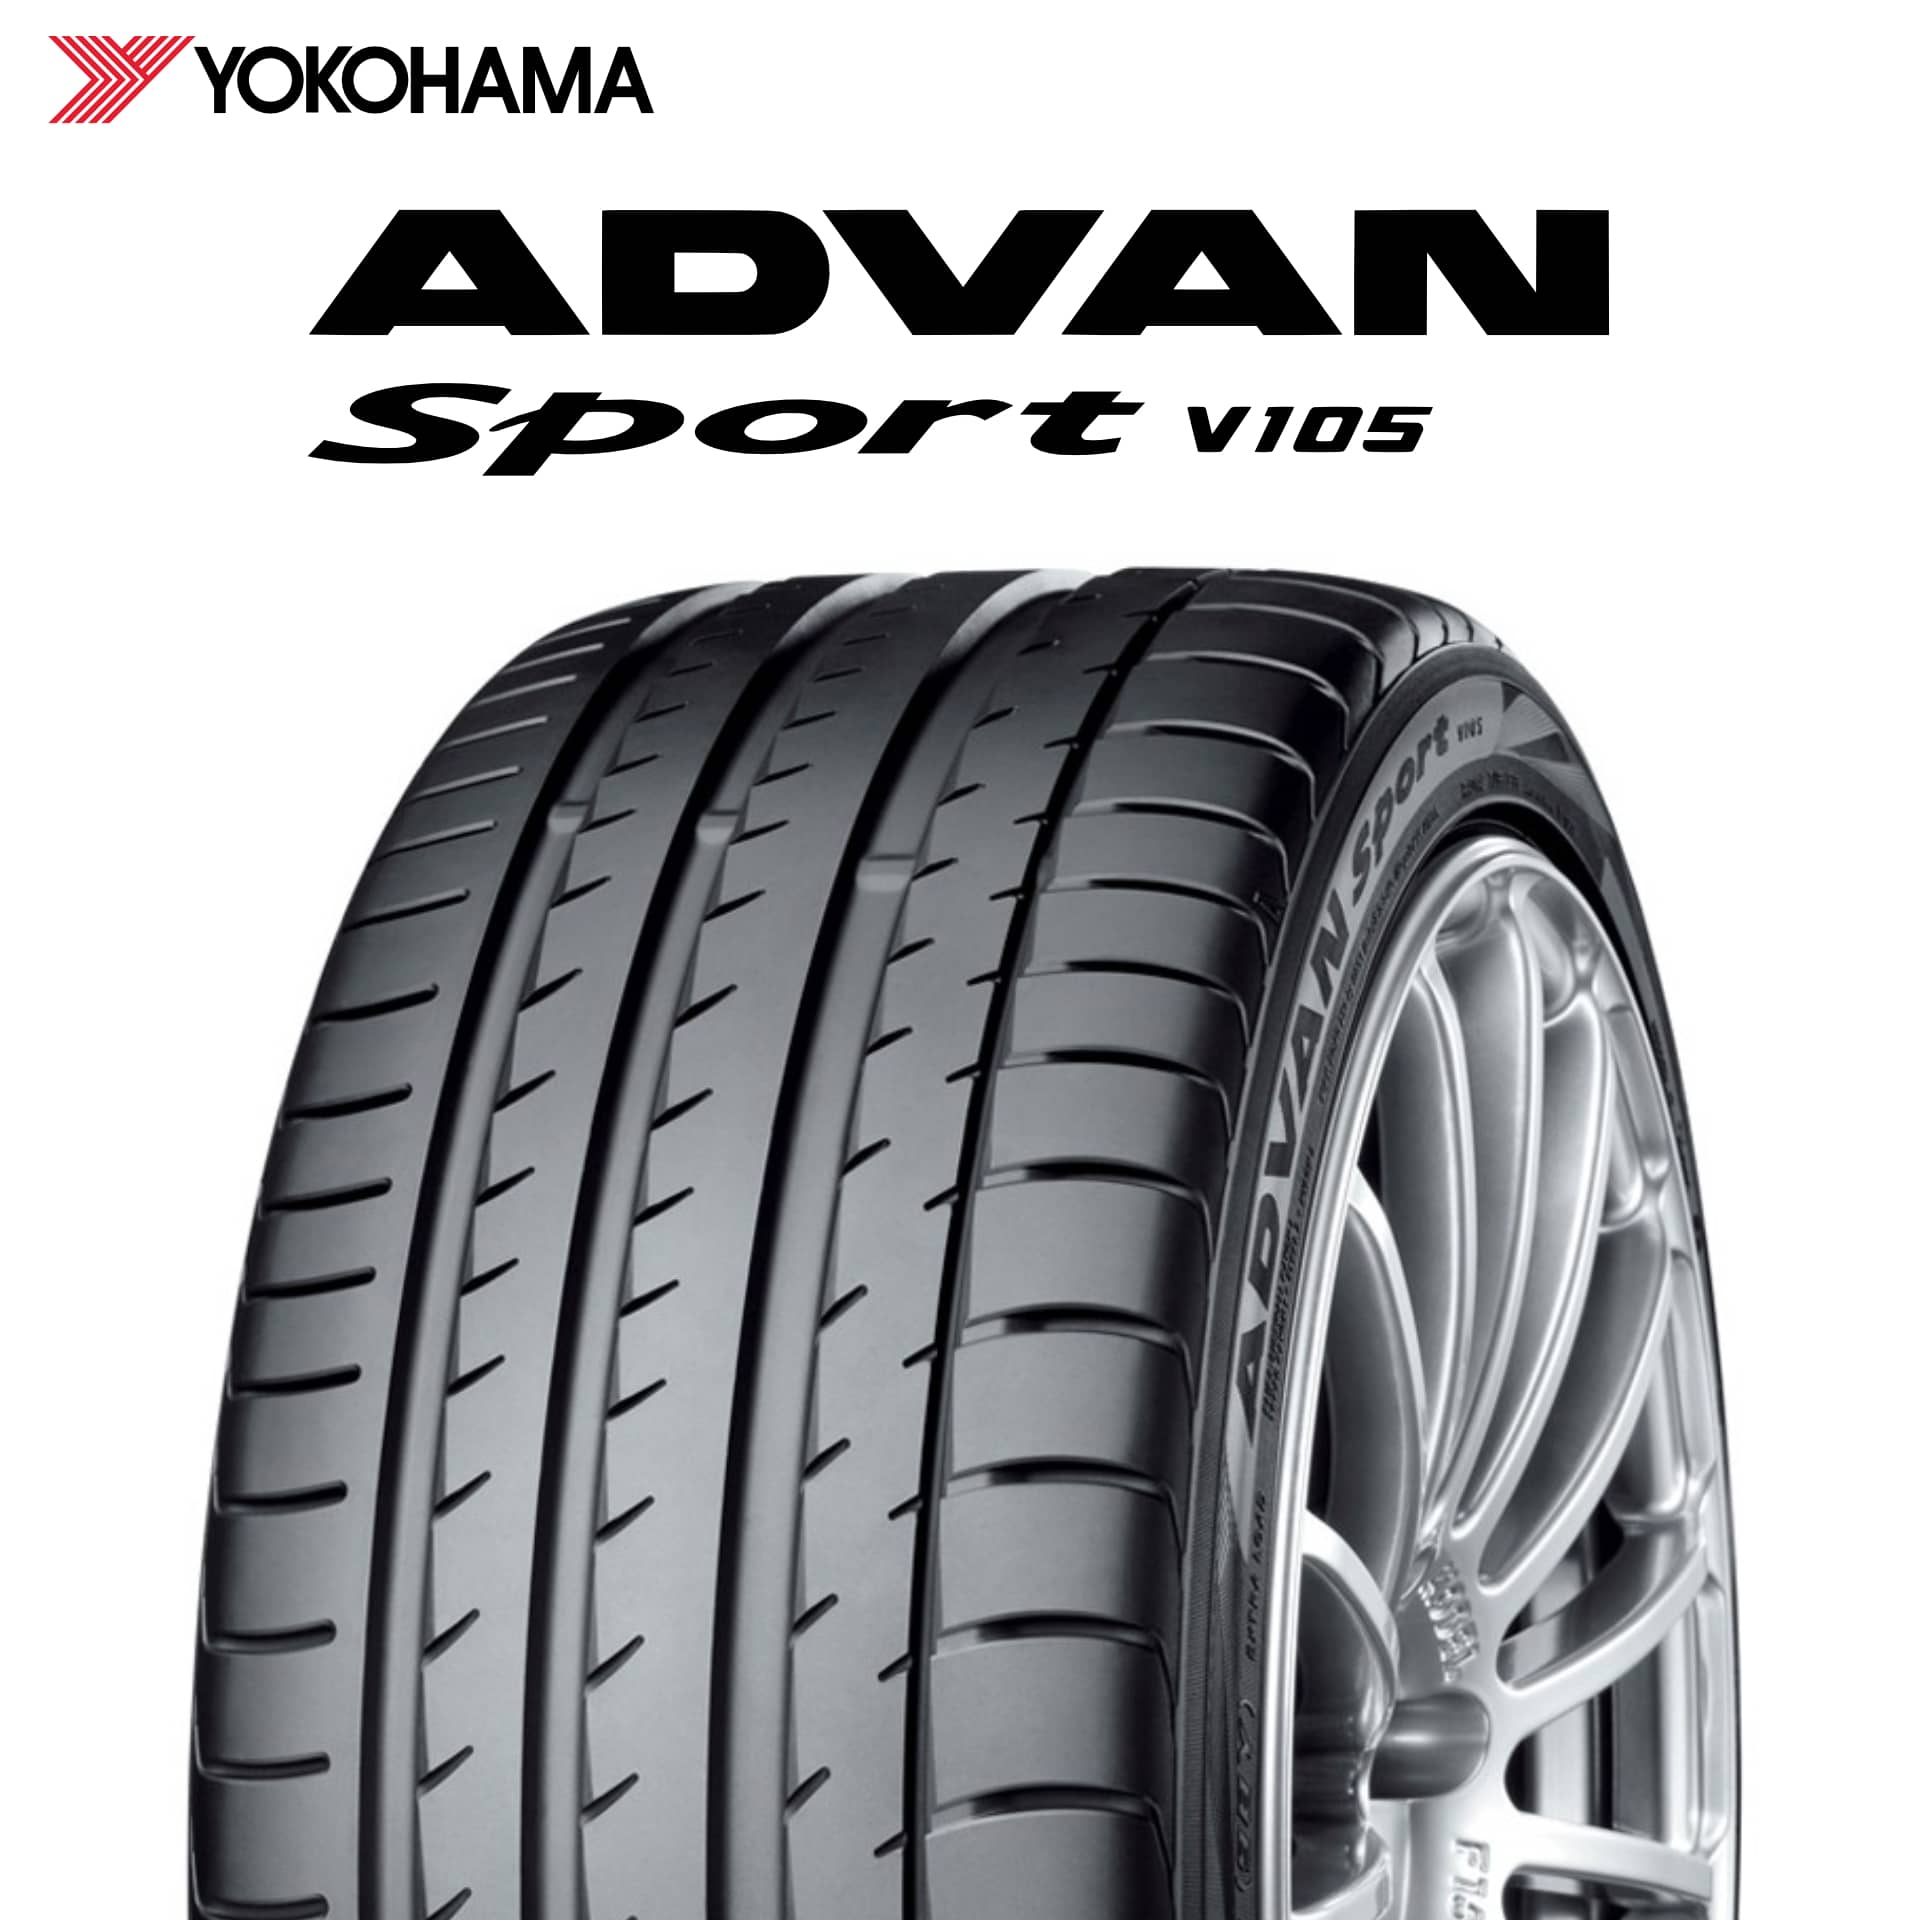 23年製 日本製 225/45R18 95Y XL MO ヨコハマタイヤ ADVAN Sport V105 (アドバン スポーツV105) メルセデスベンツ承認タイヤ 18インチ 新品